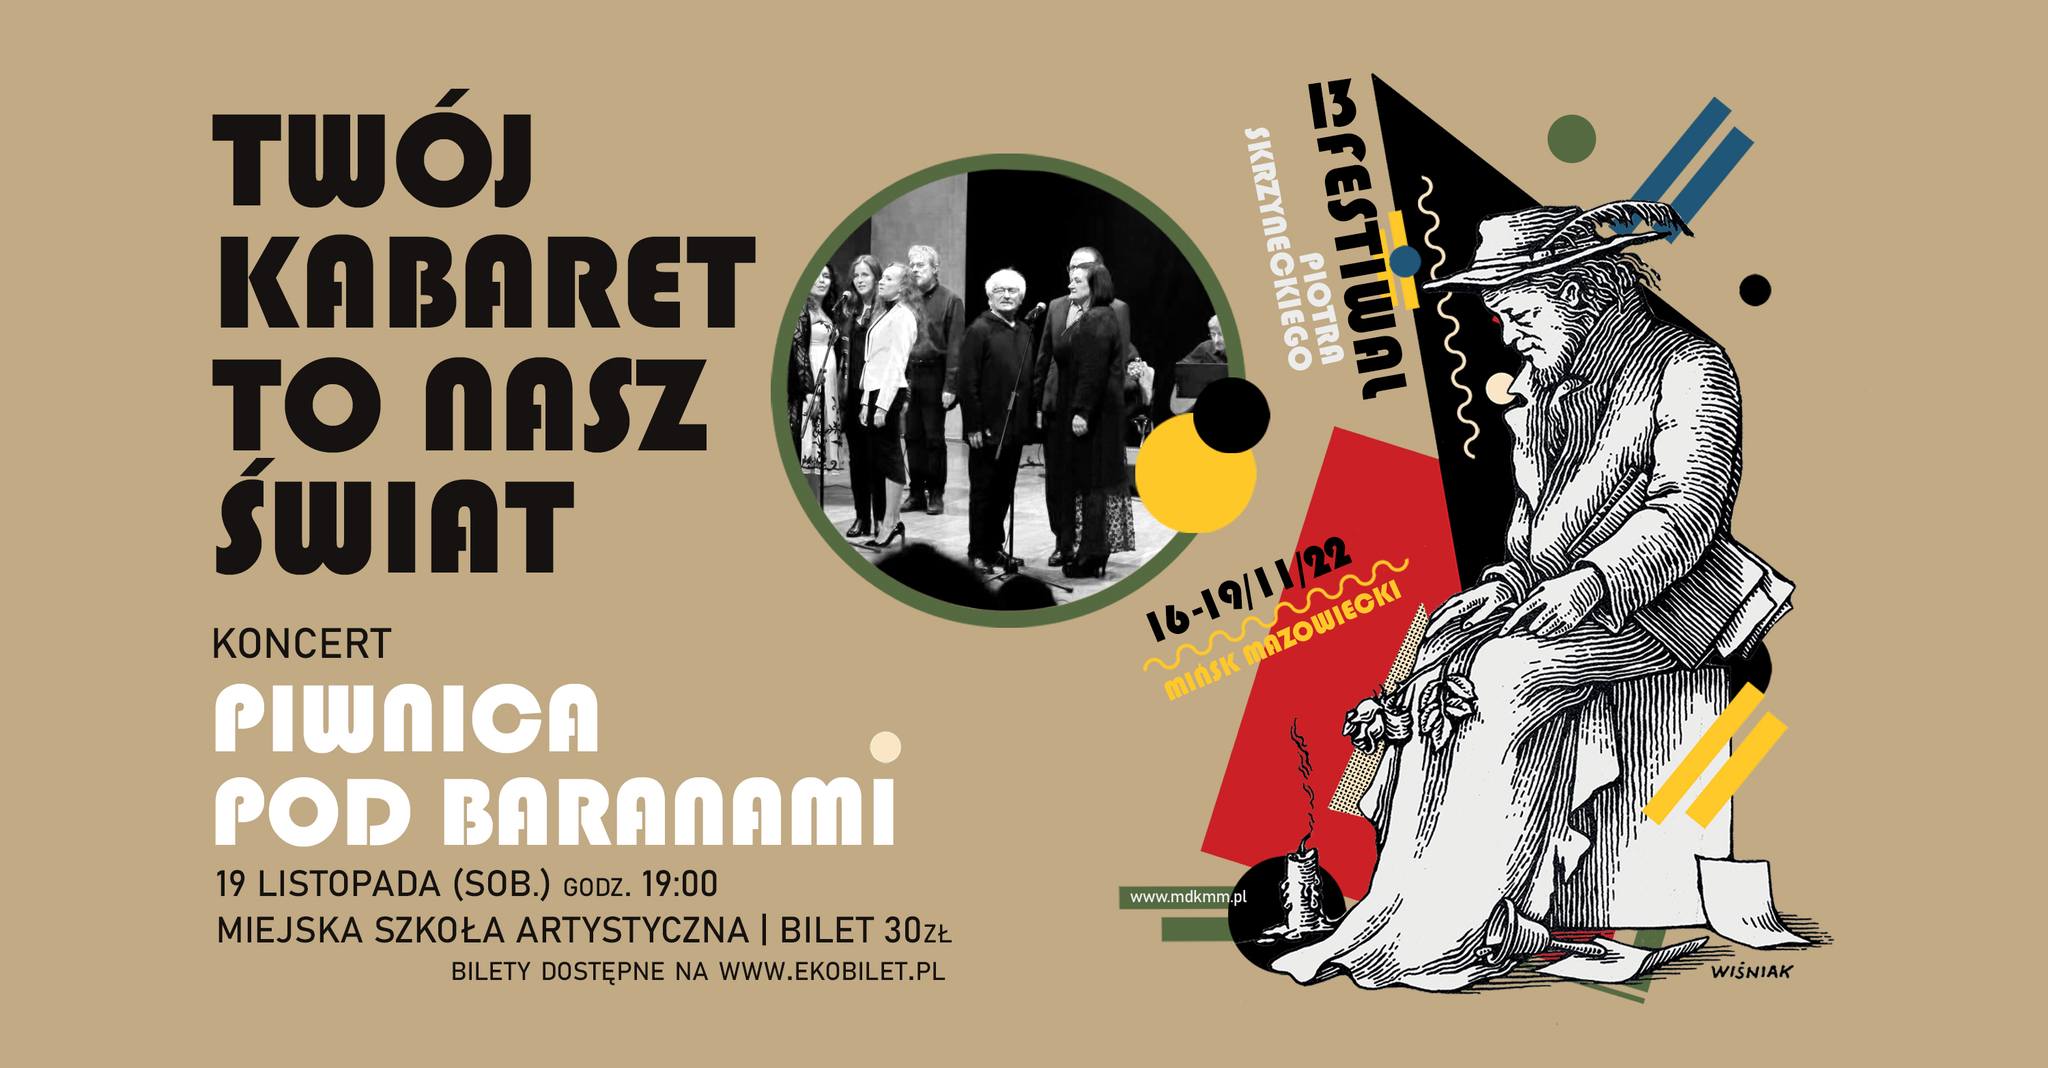 Piwnica pod Baranami | Twój kabaret to nasz świat | KONCERT | 13.Festiwal Piotra Skrzyneckiego